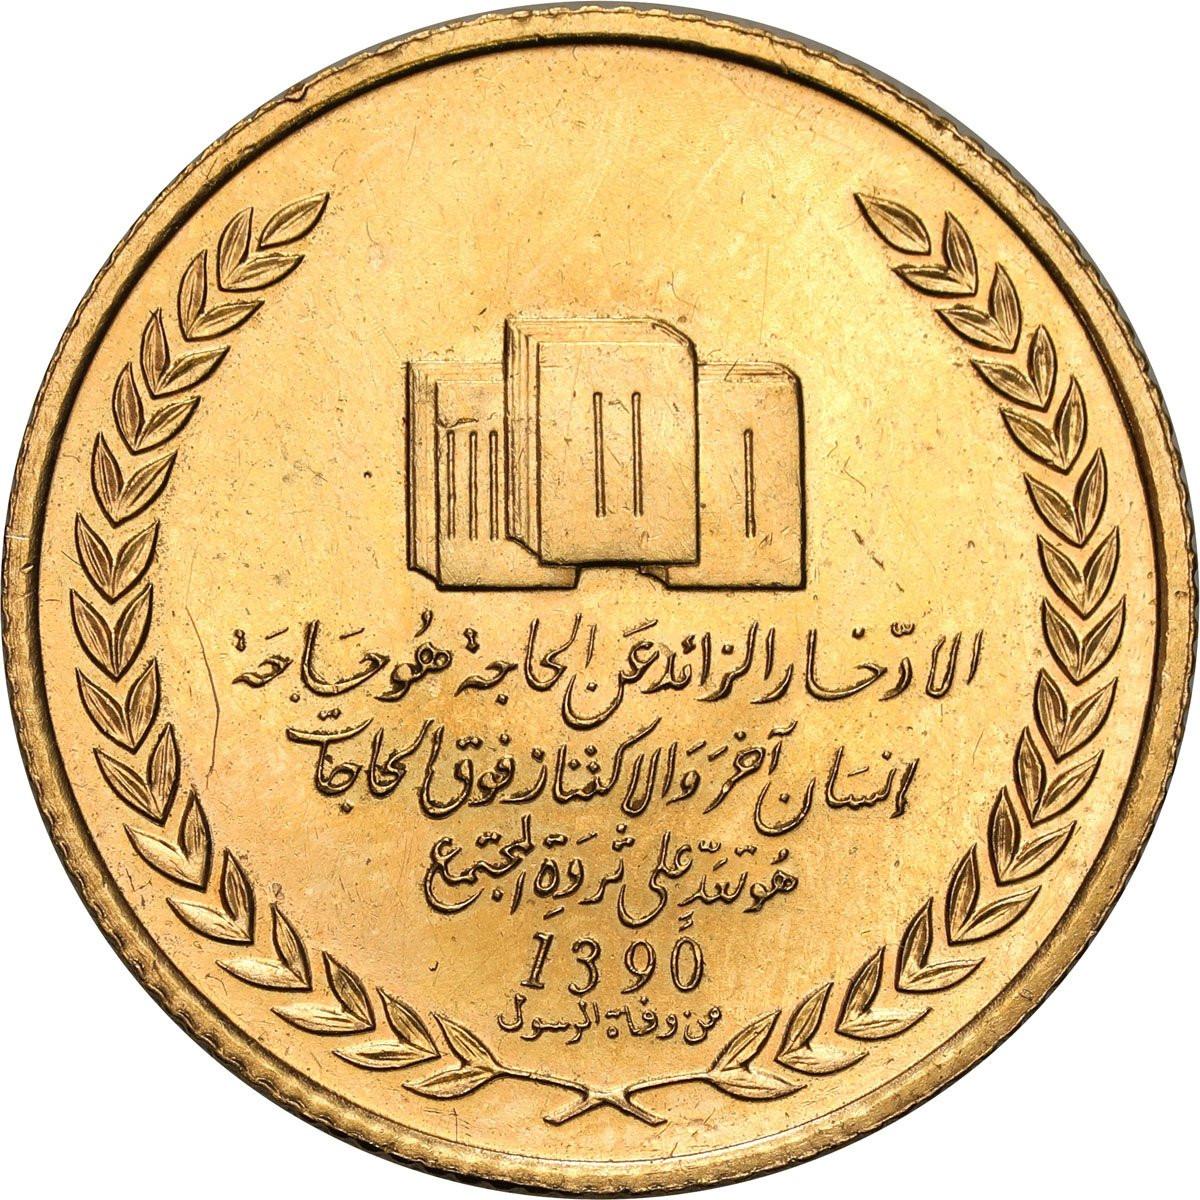 Libia. Złoty medal z Kadafim = 1 funt angielski